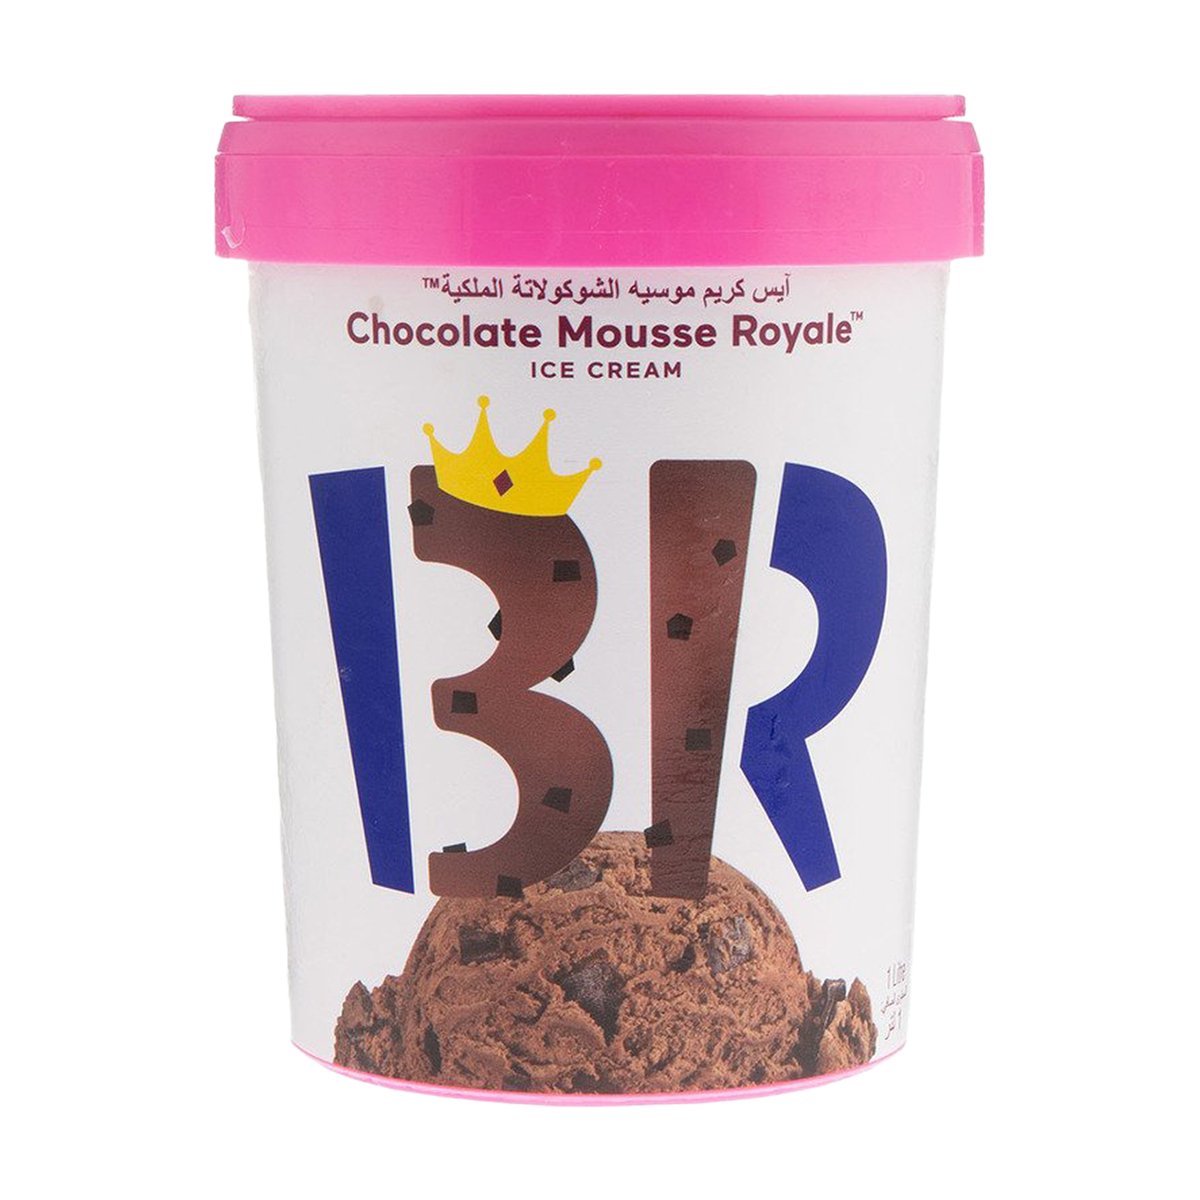 اشتري قم بشراء باسكن روبنز آيس كريم موسيه الشوكولاتة الملكية 1 لتر Online at Best Price من الموقع - من لولو هايبر ماركت Ice Cream Take Home في الامارات